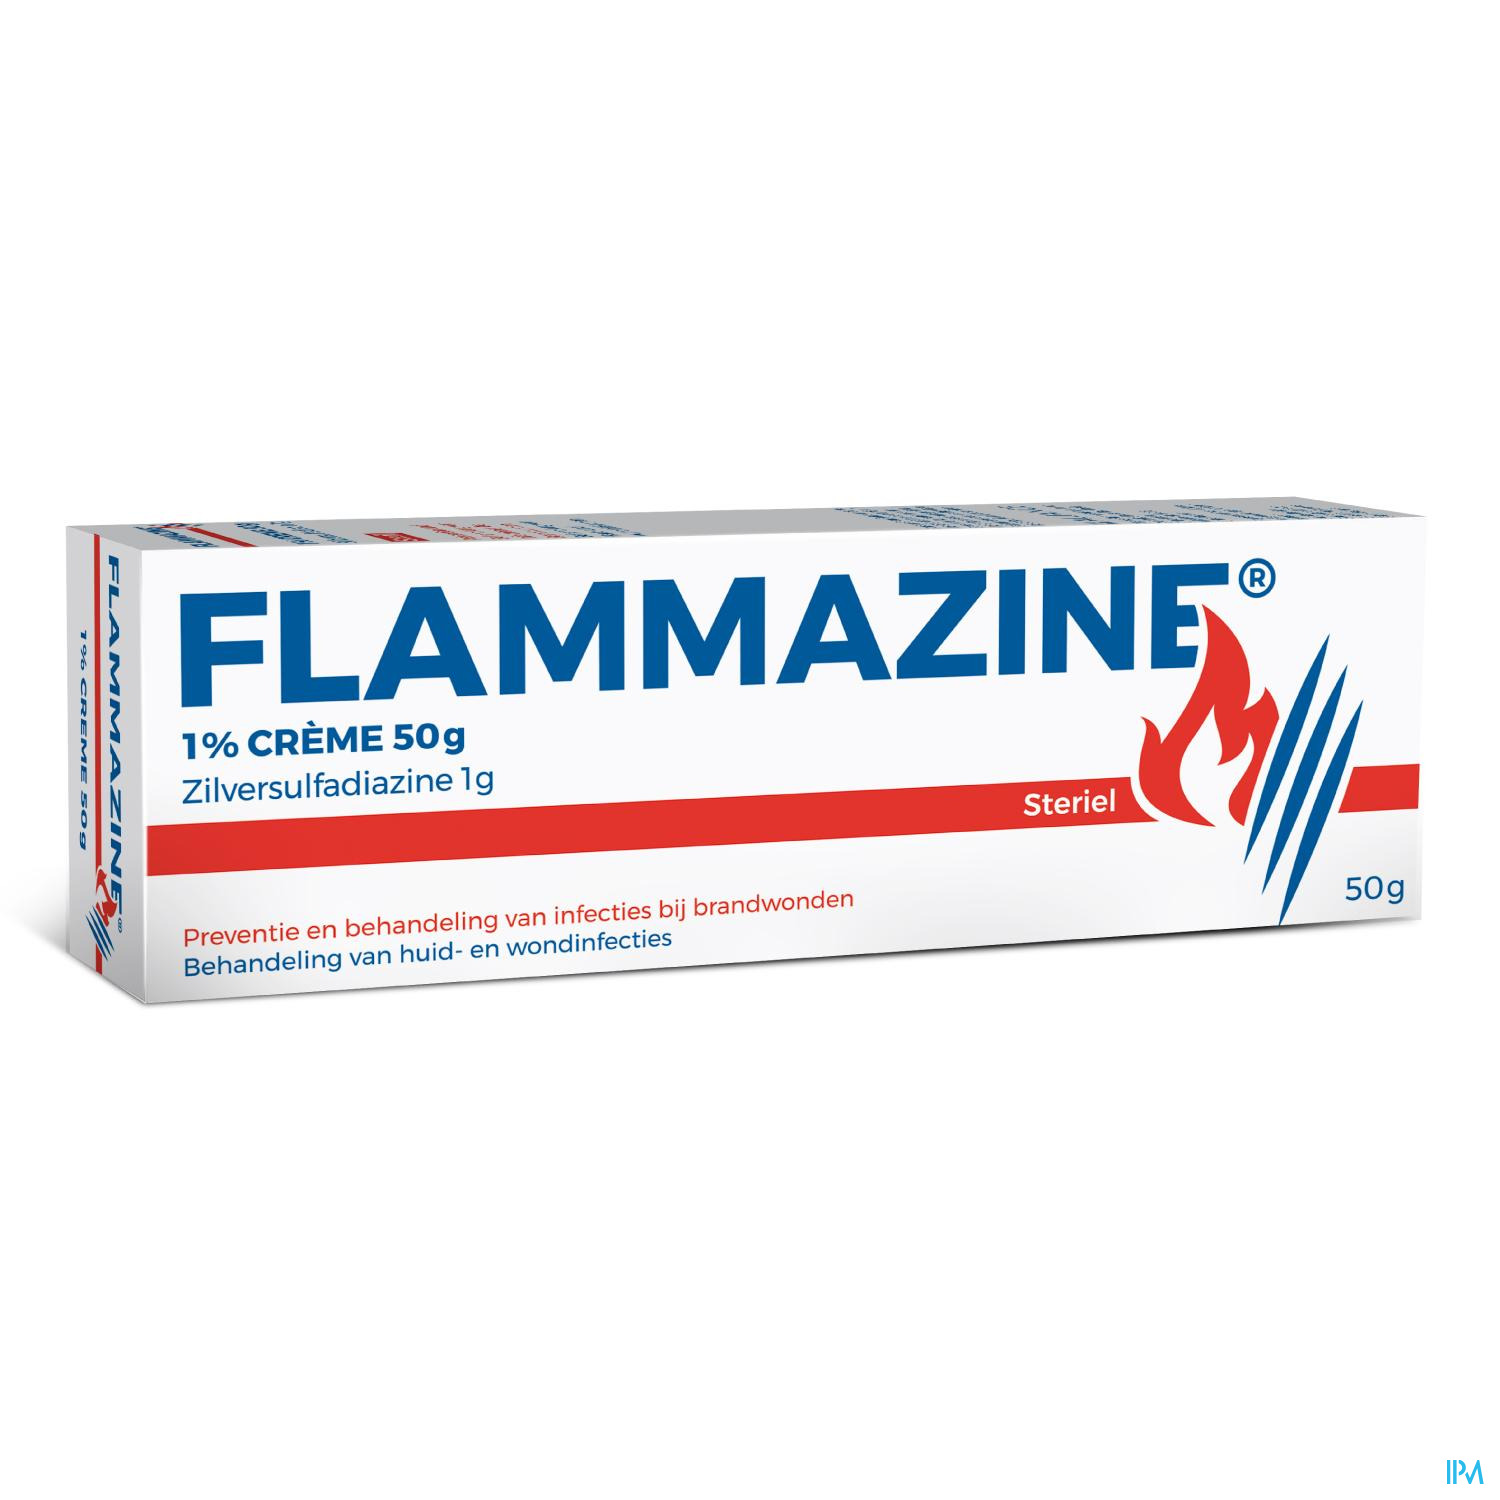 geroosterd brood Veronderstellen Schrijft een rapport Flammazine Creme 50g - Apotheek Online